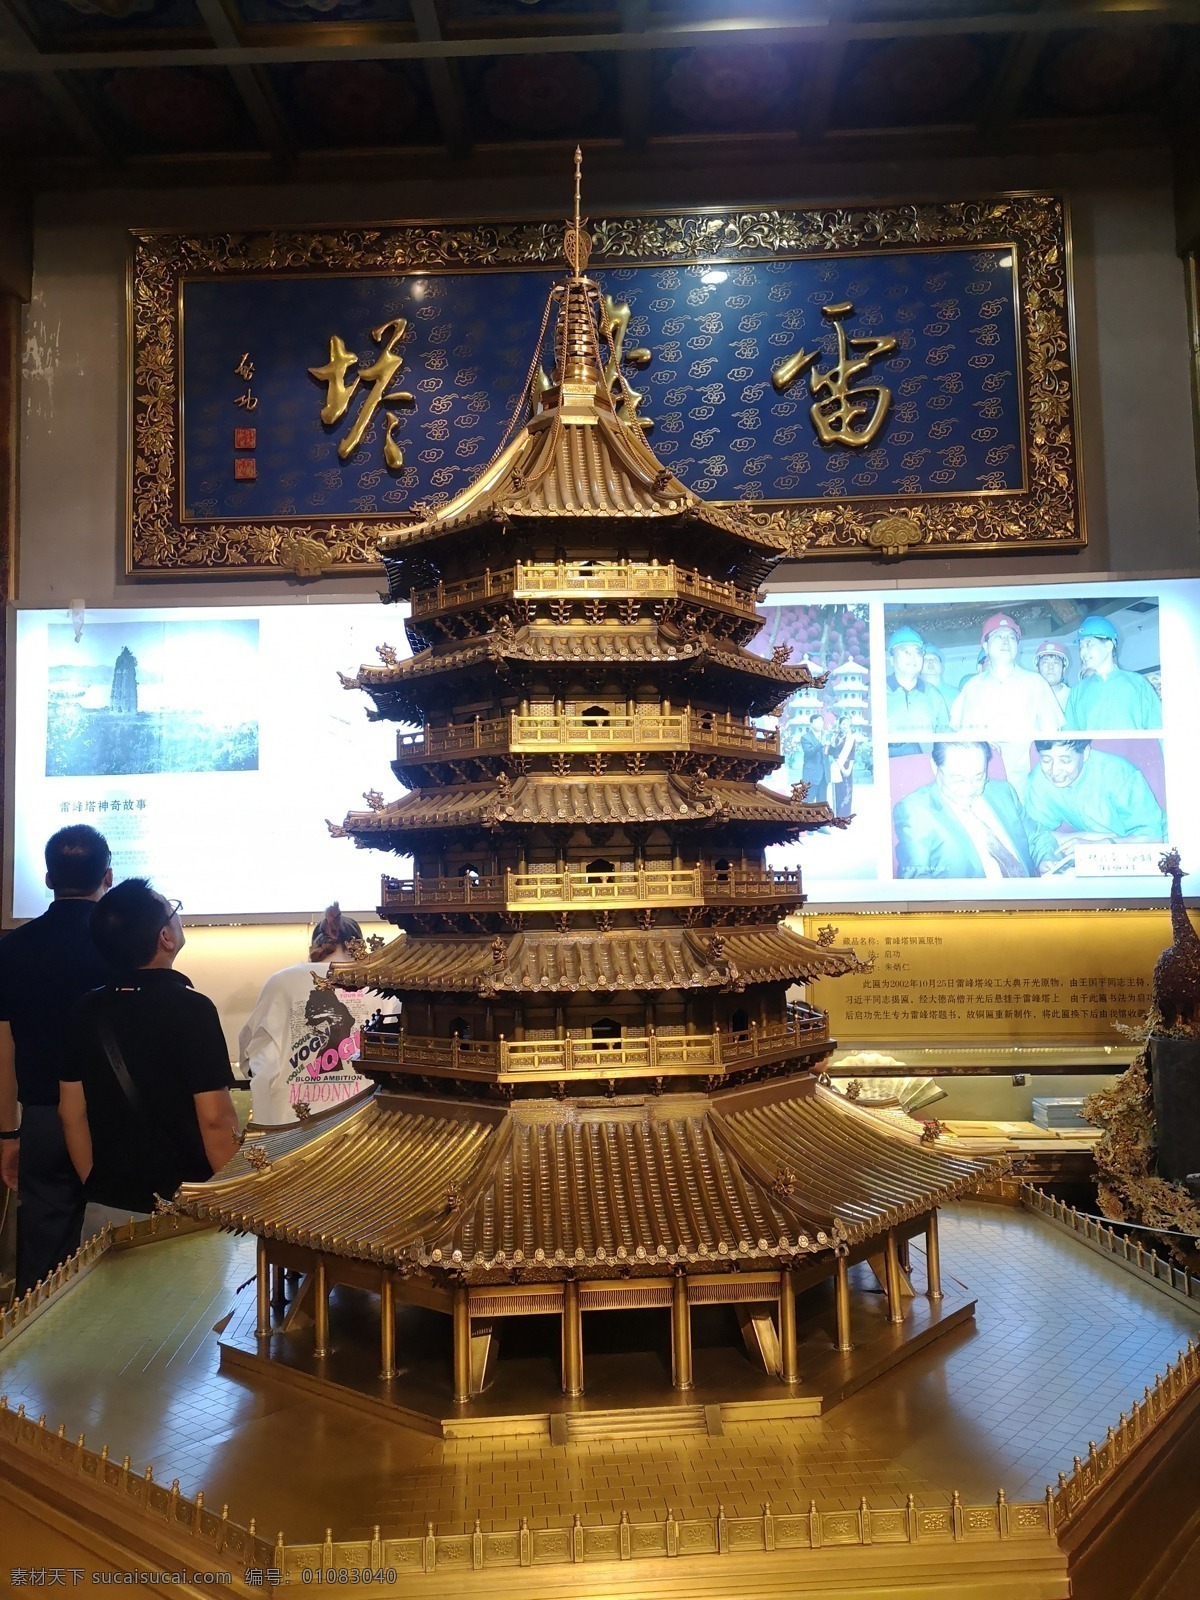 雷峰塔模型 模型 雷峰塔 铜铸 杭州 景点 旅游摄影 国内旅游